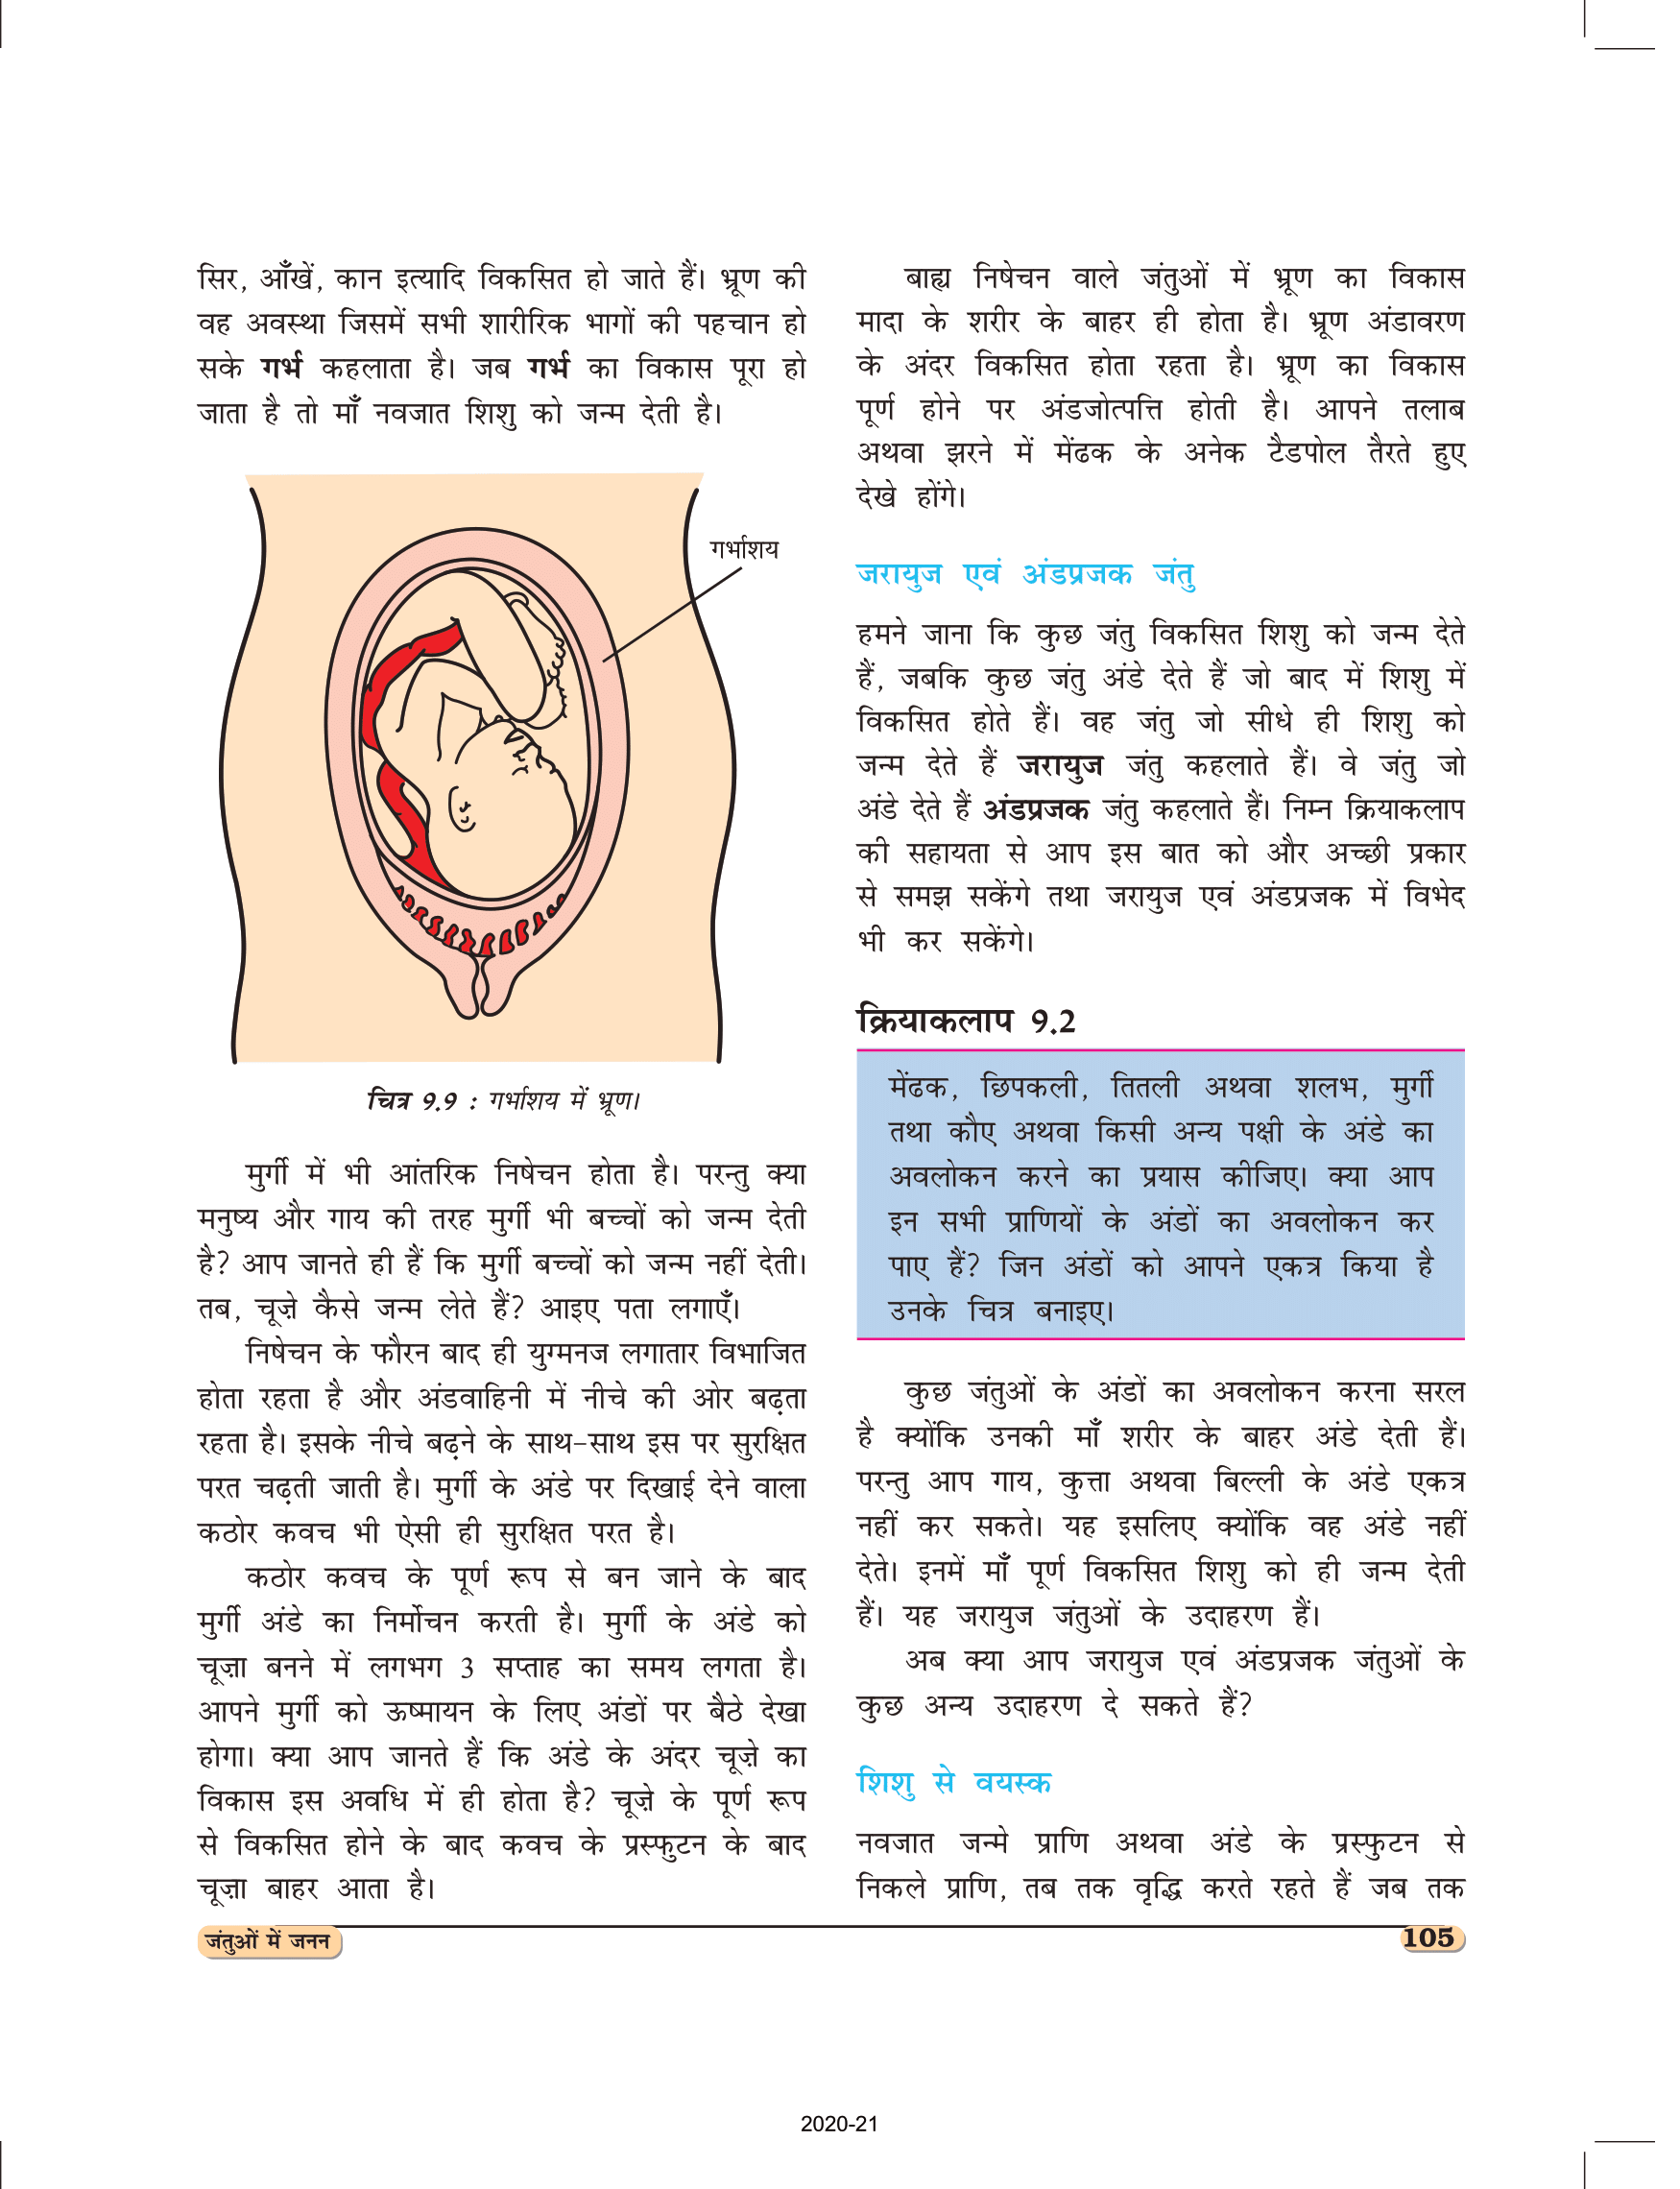 कक्षा 8 विज्ञान अध्याय 9 एनसीईआरटी का पाठ